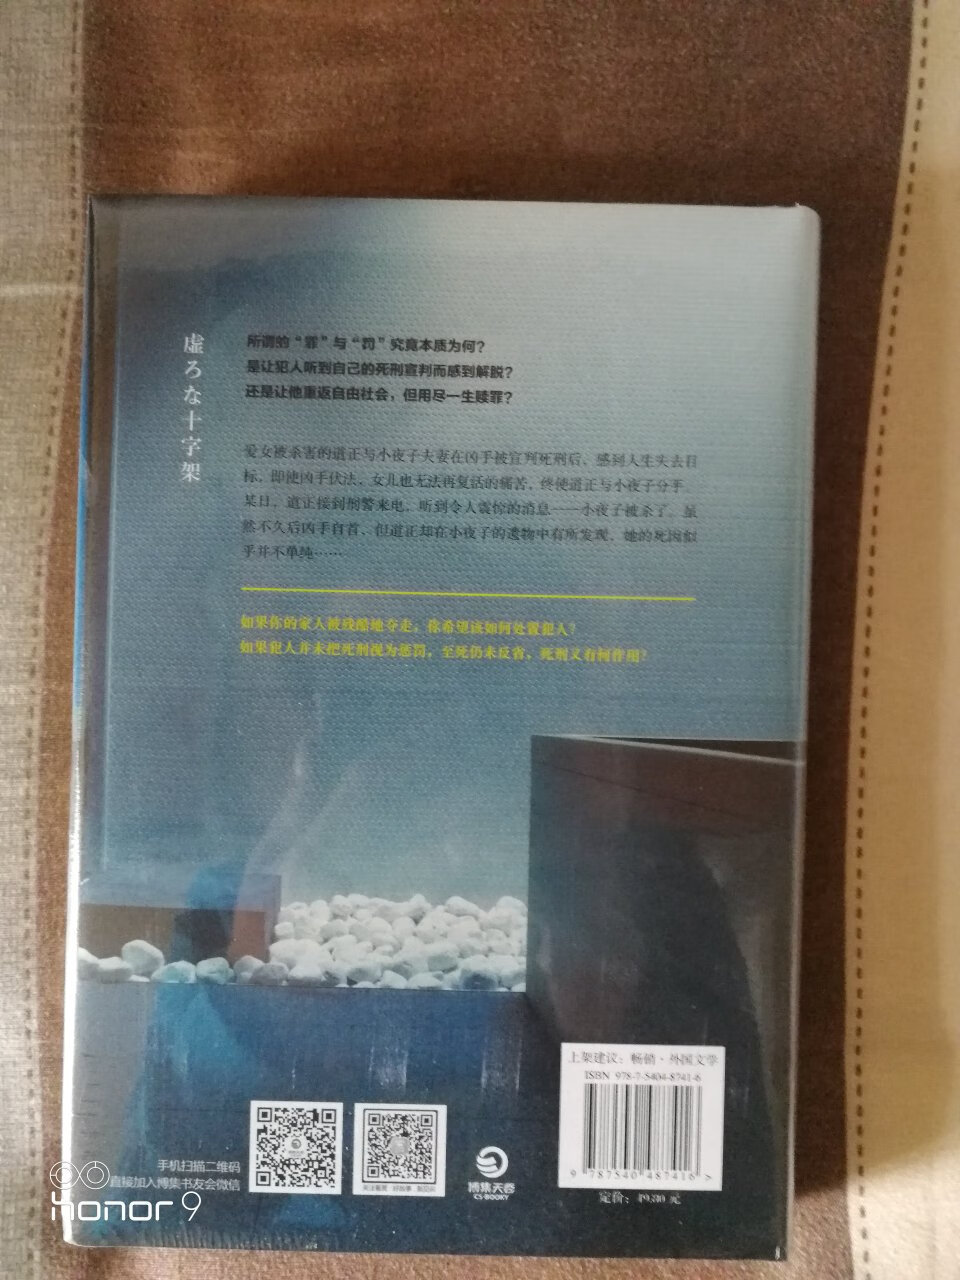 包装很好，书没有损坏。东野圭*的小说一本一本的收集。